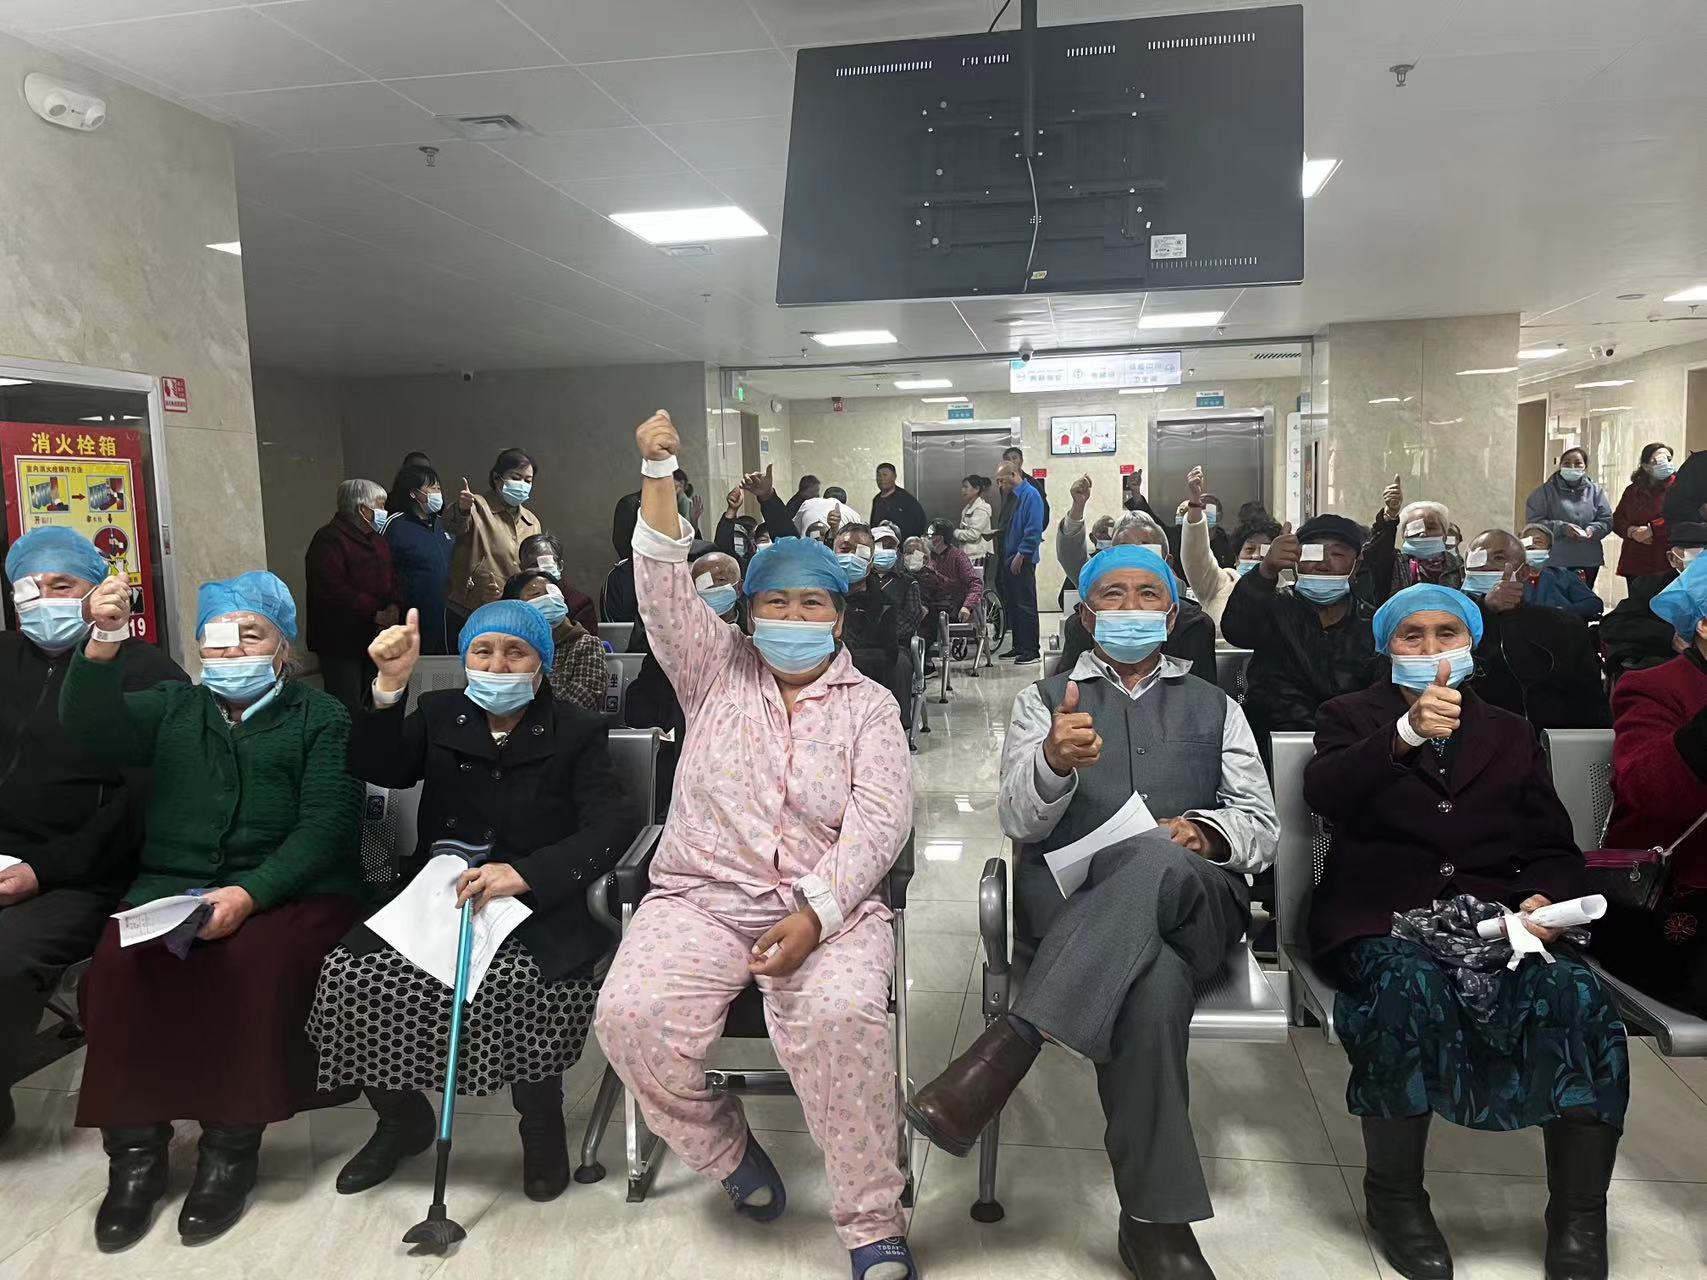 黑龍江大慶眼科醫院「光明使者」新疆行 88名眼疾患者重獲光明